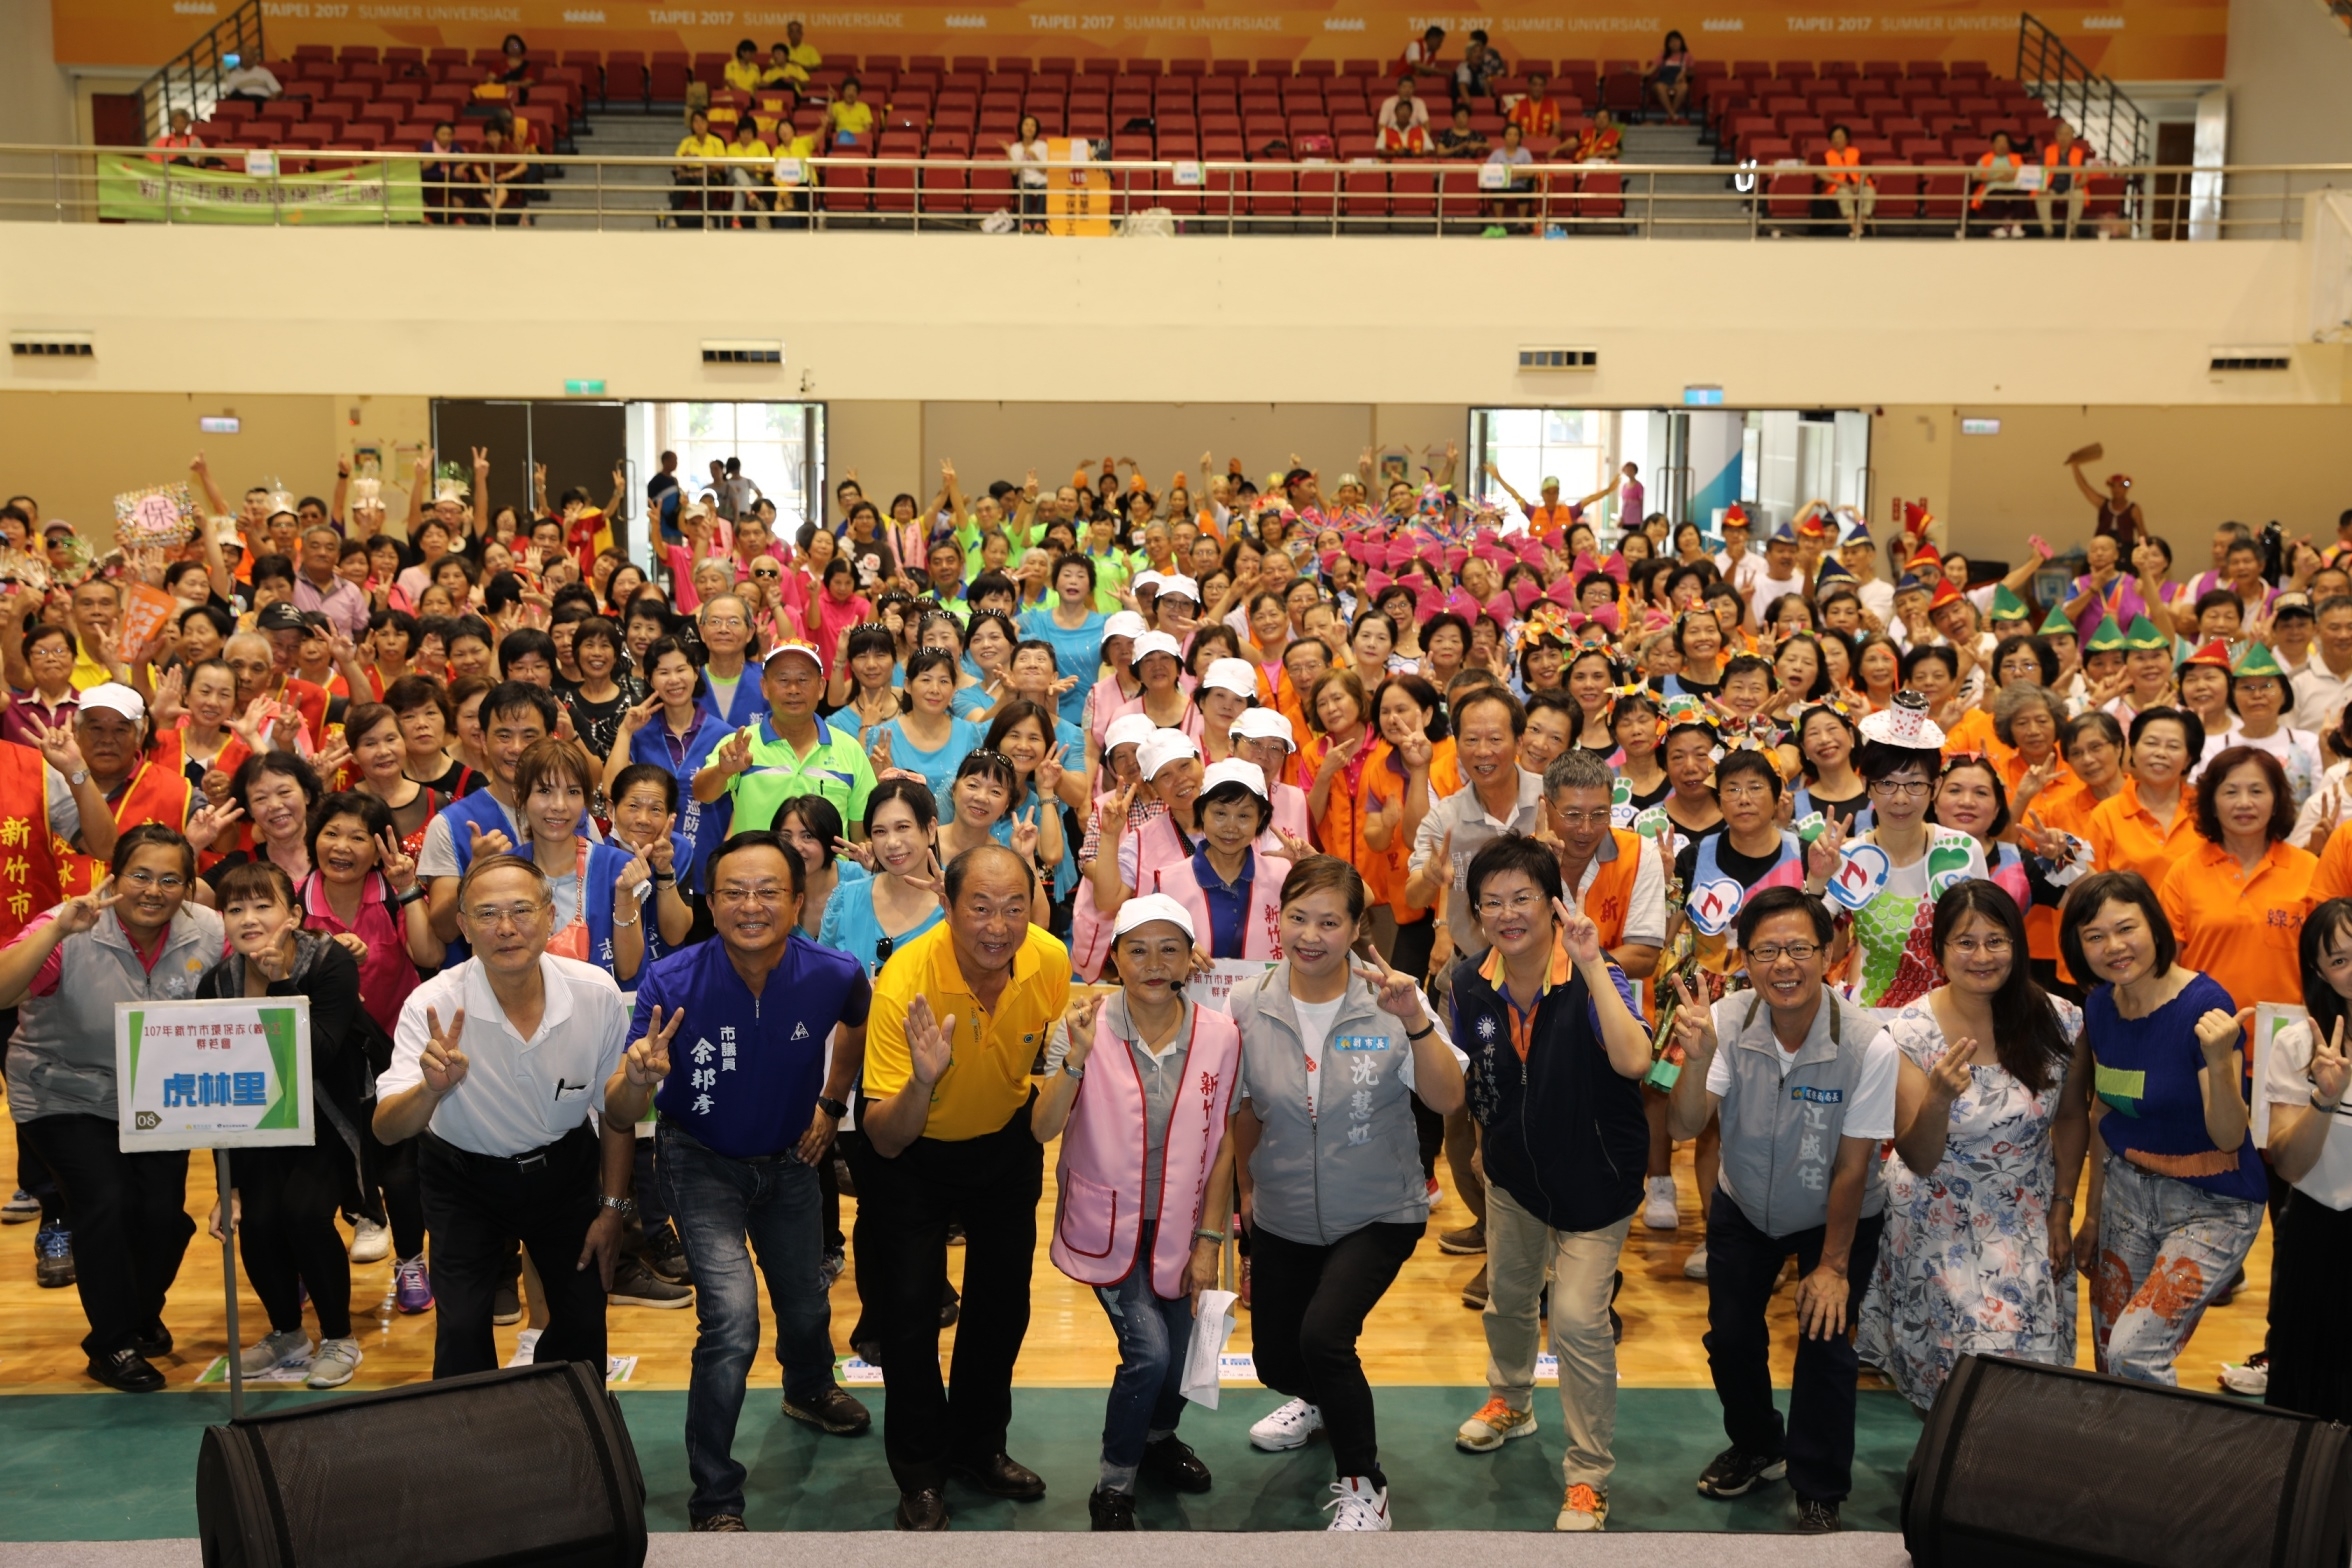 新竹市環保志工群英會身心環保動起來 啦啦隊活力舞出「好空氣、齊努力」大圖